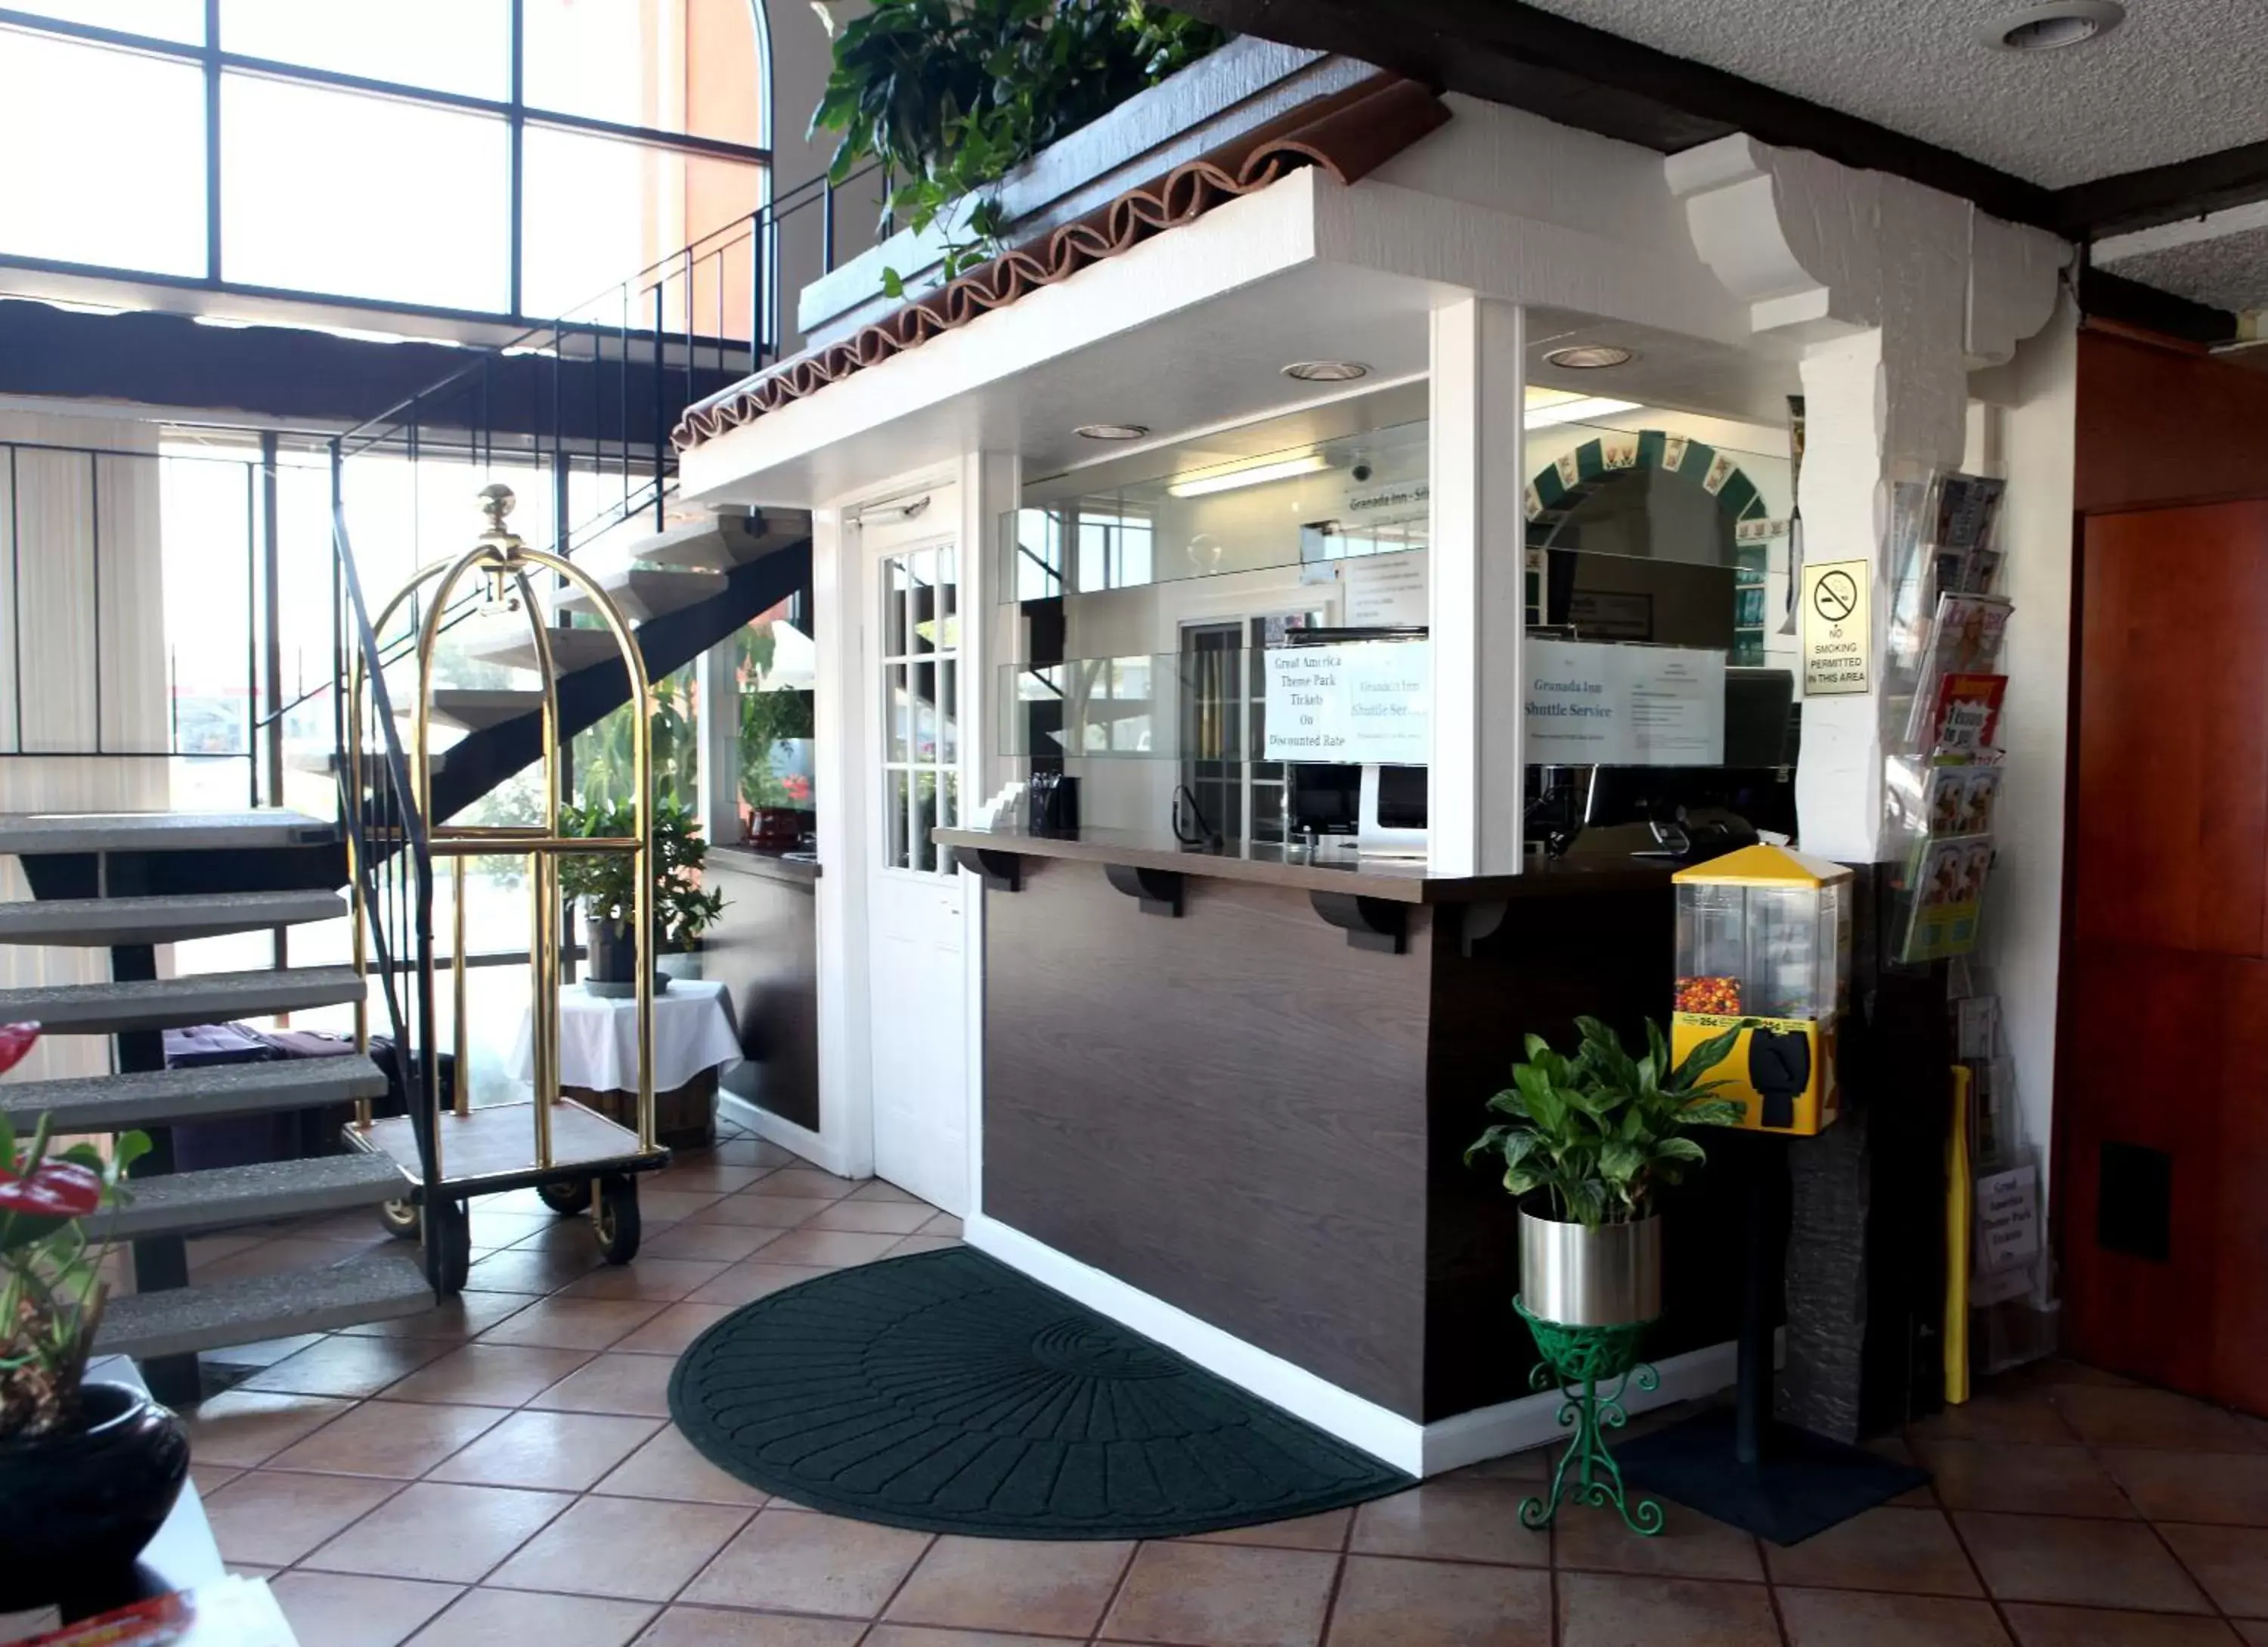 Lobby or reception in Granada Inn